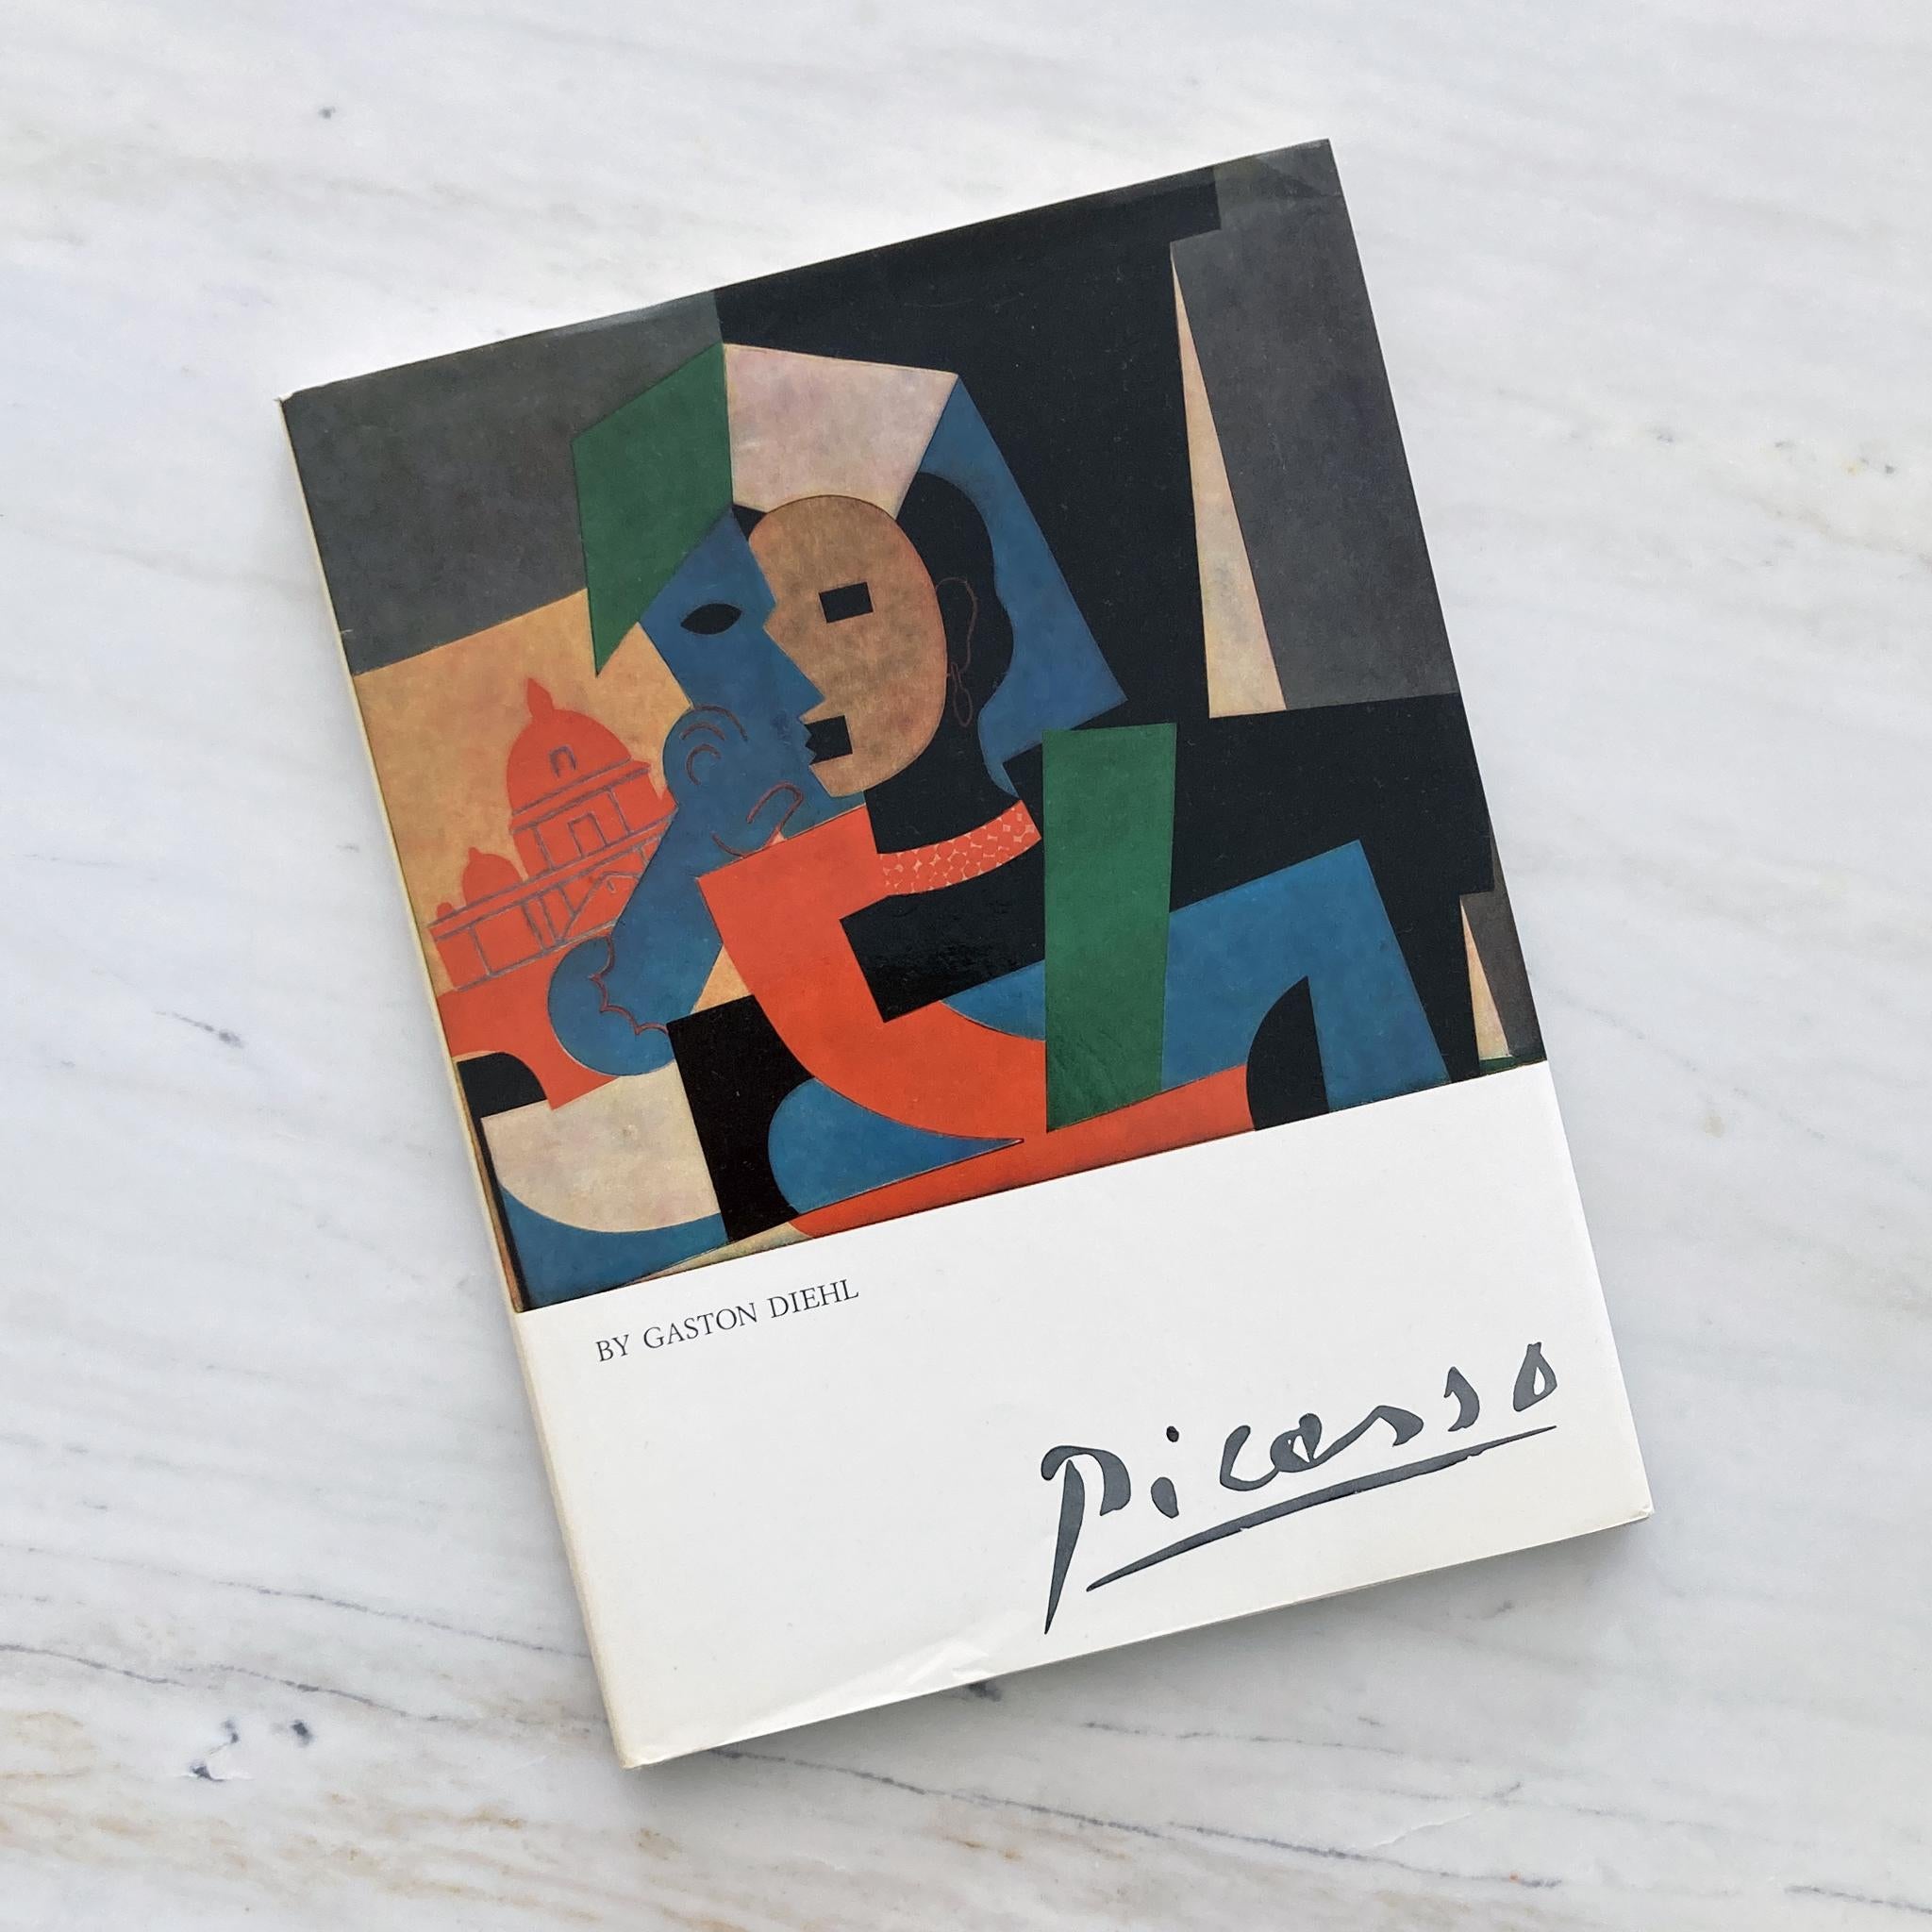 Gebundenes Buch mit Illustrationen und Gemälden von Picasso von Gaston Diehl, Bonfini Press 1977, gedruckt in Italien. Text auf Englisch.

Dieses Buch untersucht die vielen Elemente, die zu Picassos brillantem Gesamtwerk beitragen. Gaston Diehl,